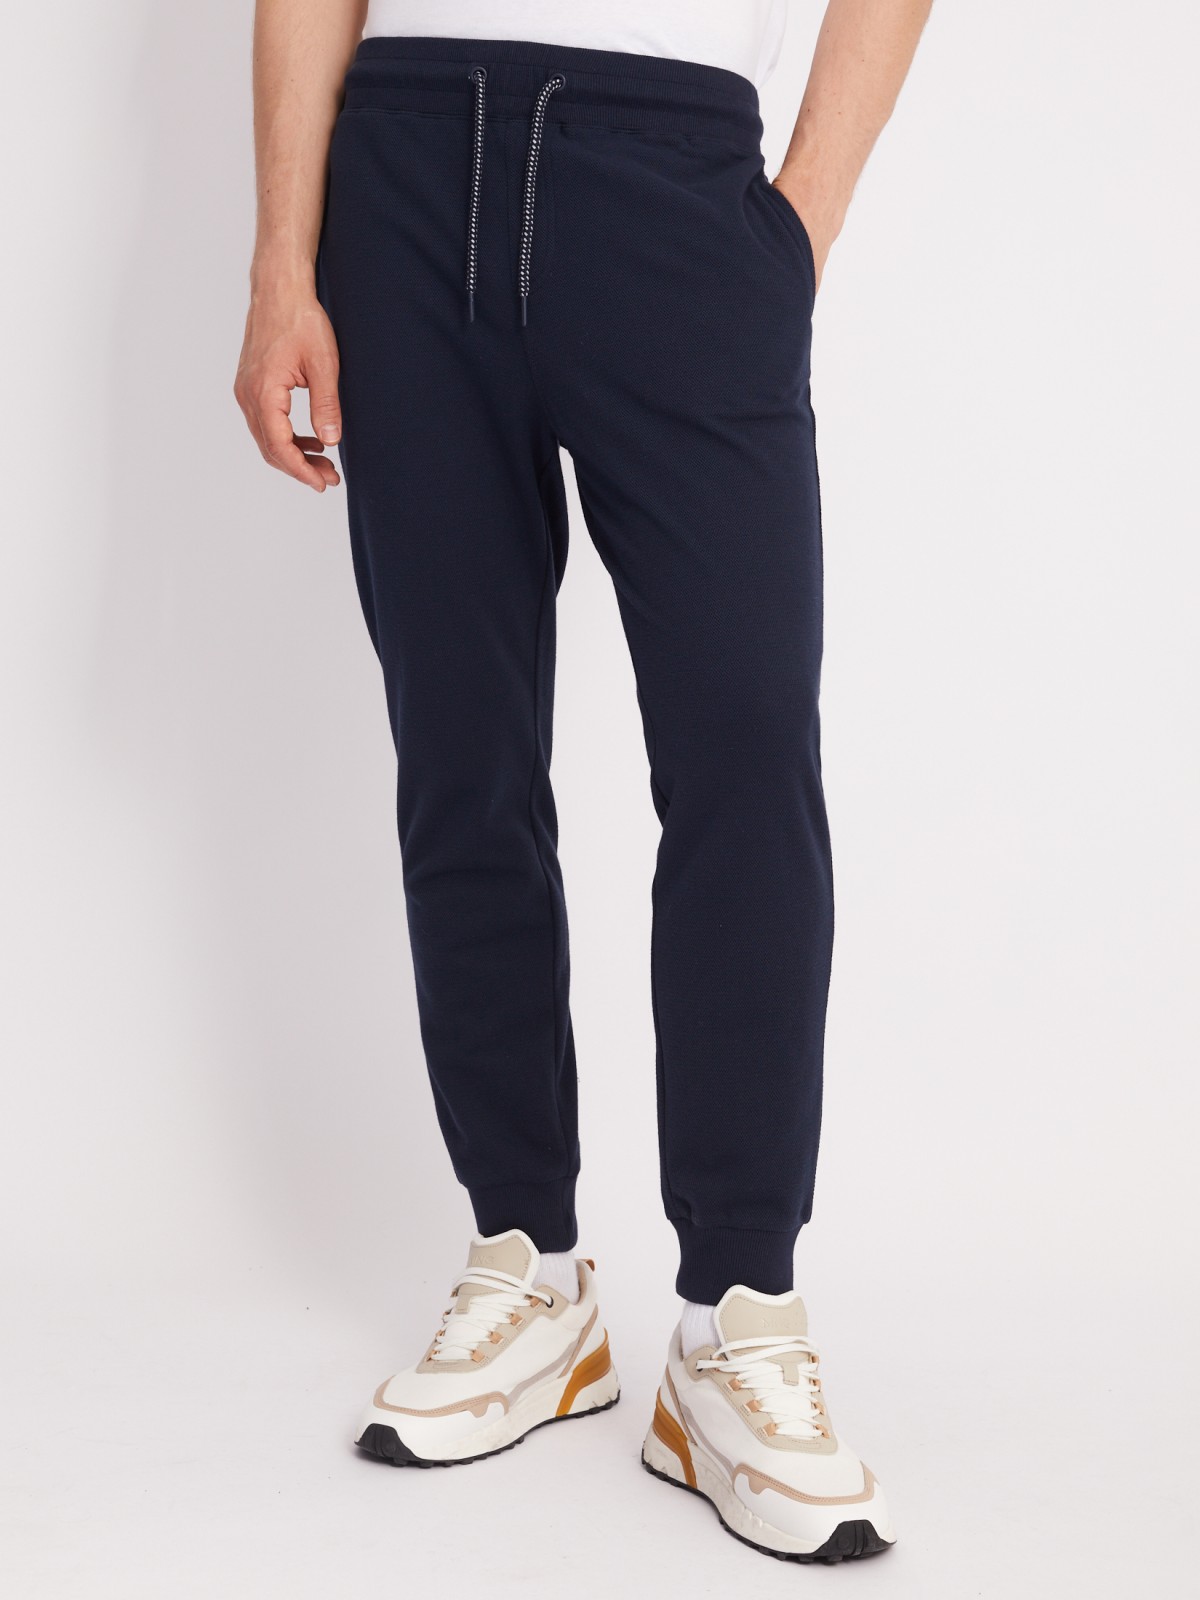 Трикотажные брюки-джоггеры в спортивном стиле zolla 21331762F012, цвет синий, размер XXL - фото 2